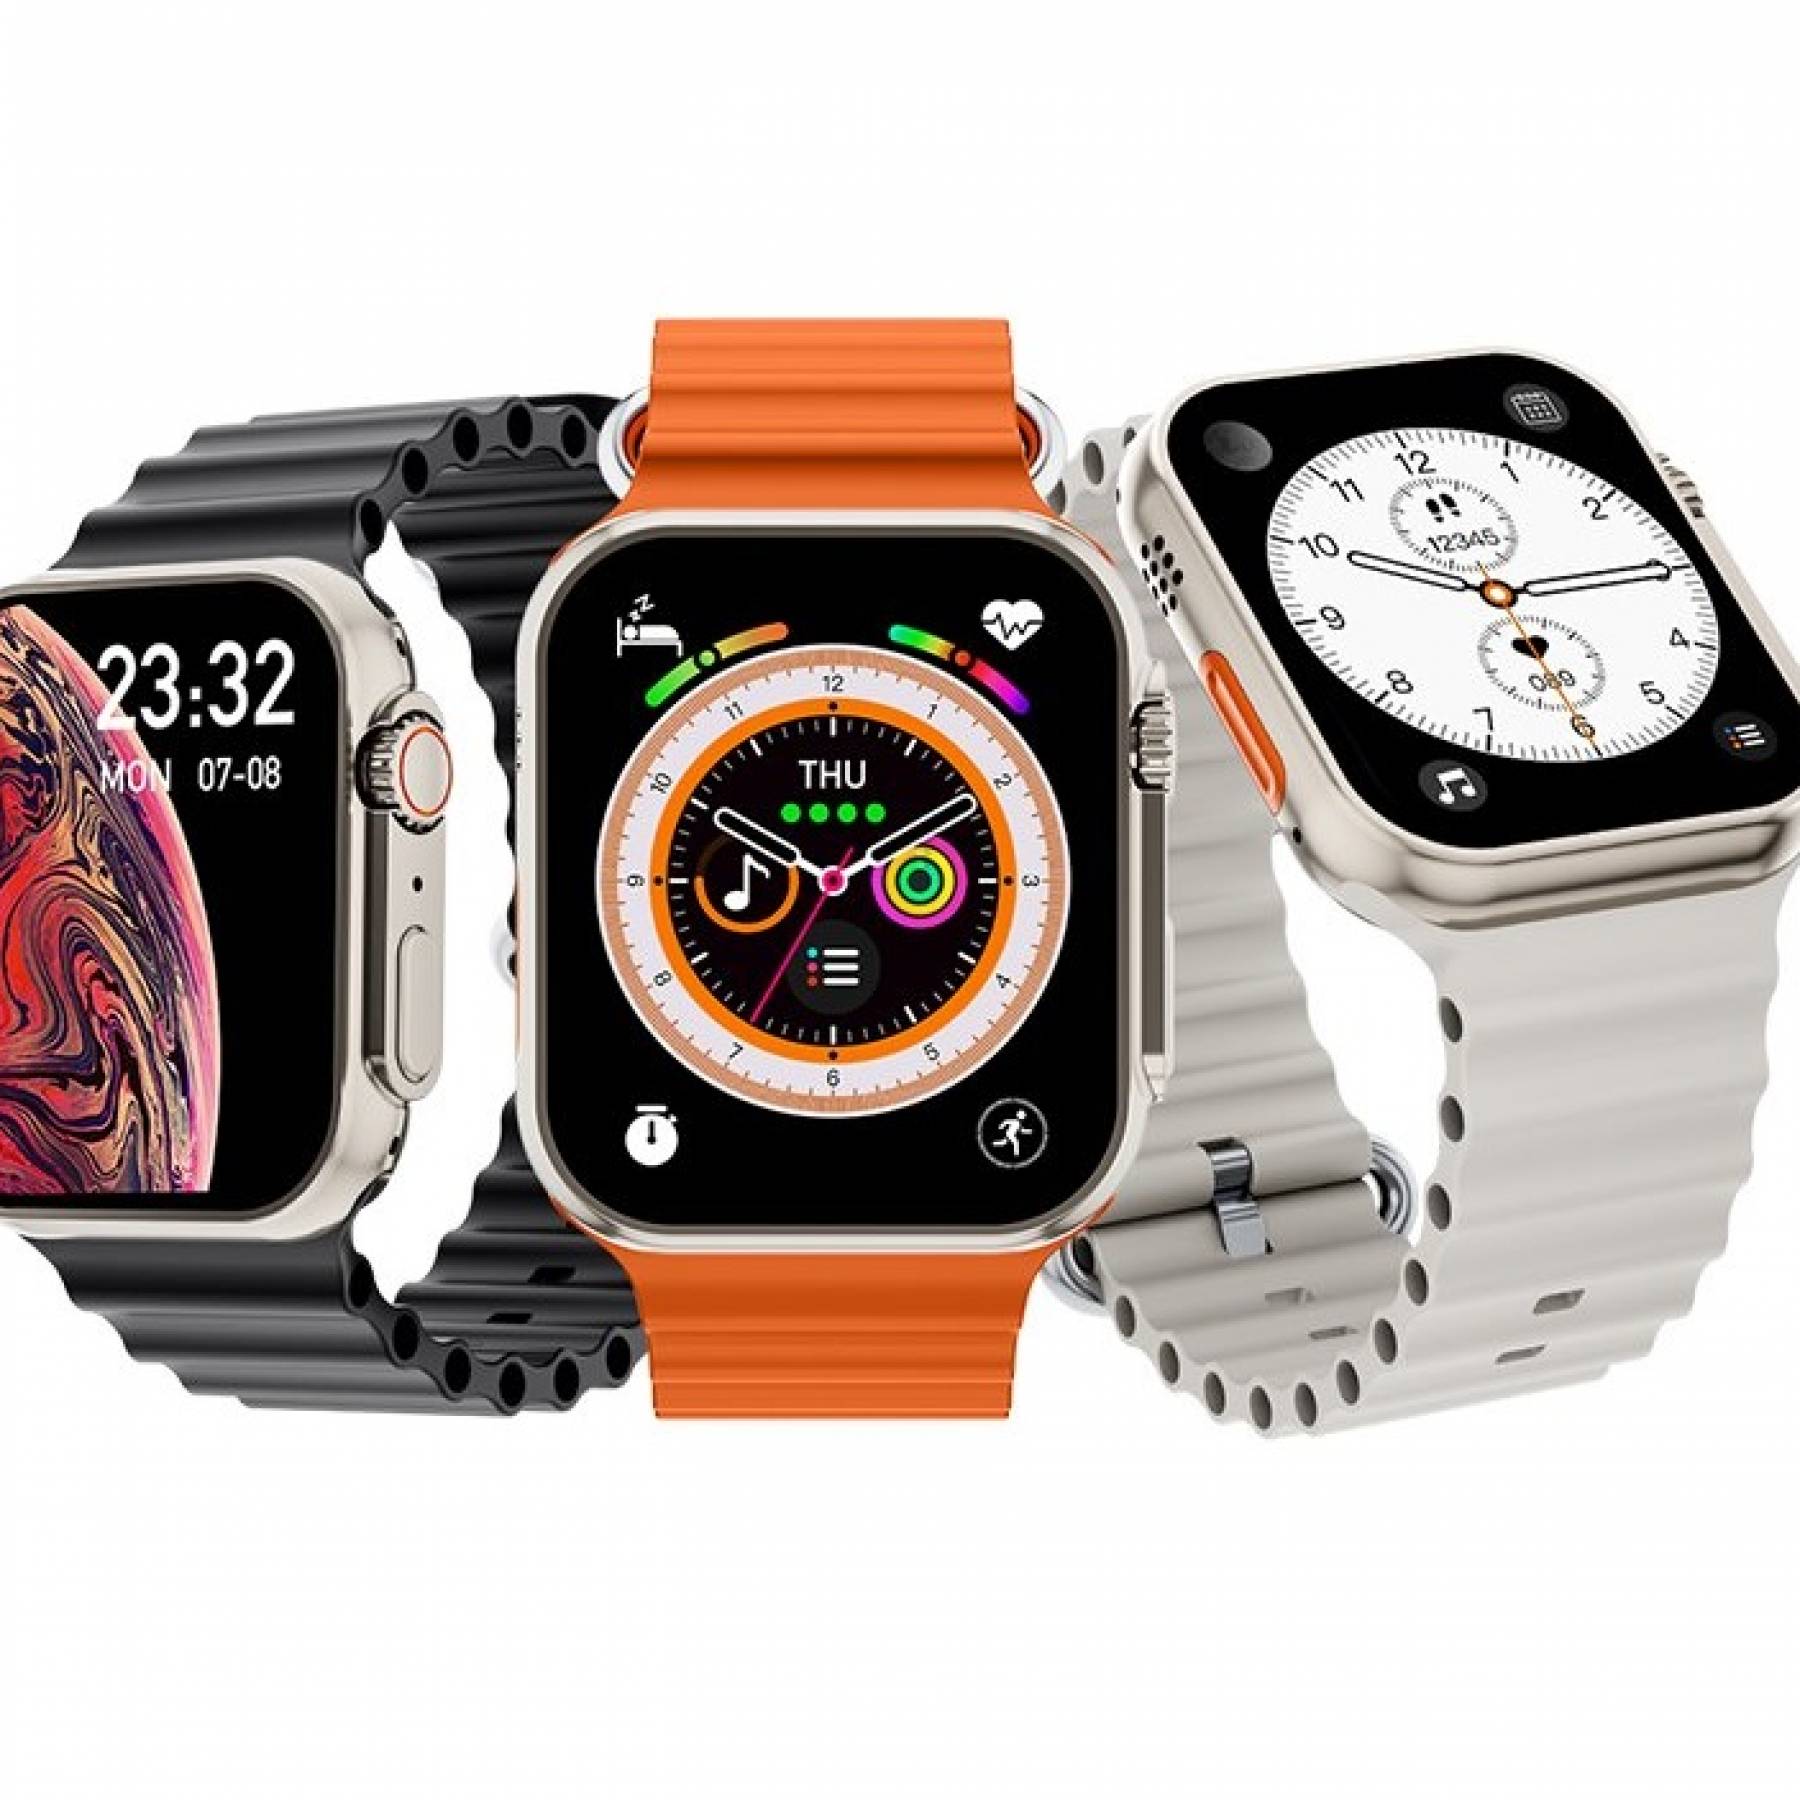 Представлены недорогие часы Gizmore Vogue, которые похожи на Apple Watch Ultra